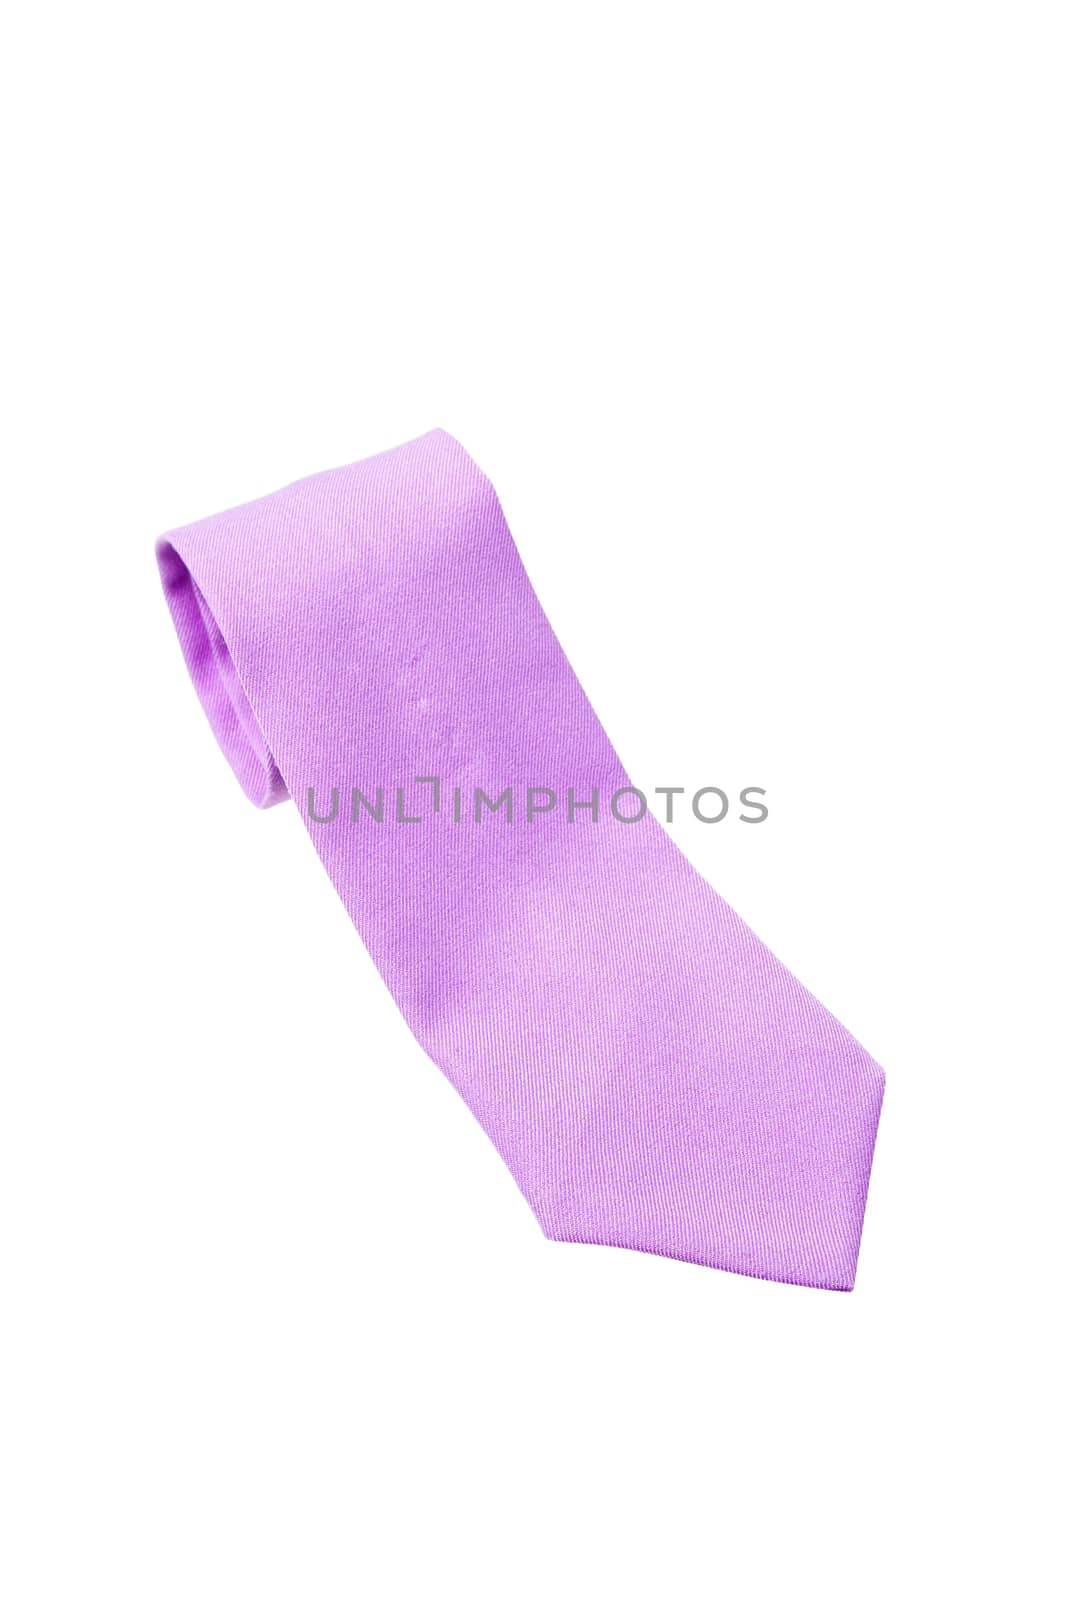 plain purple business neck tie by kasinv